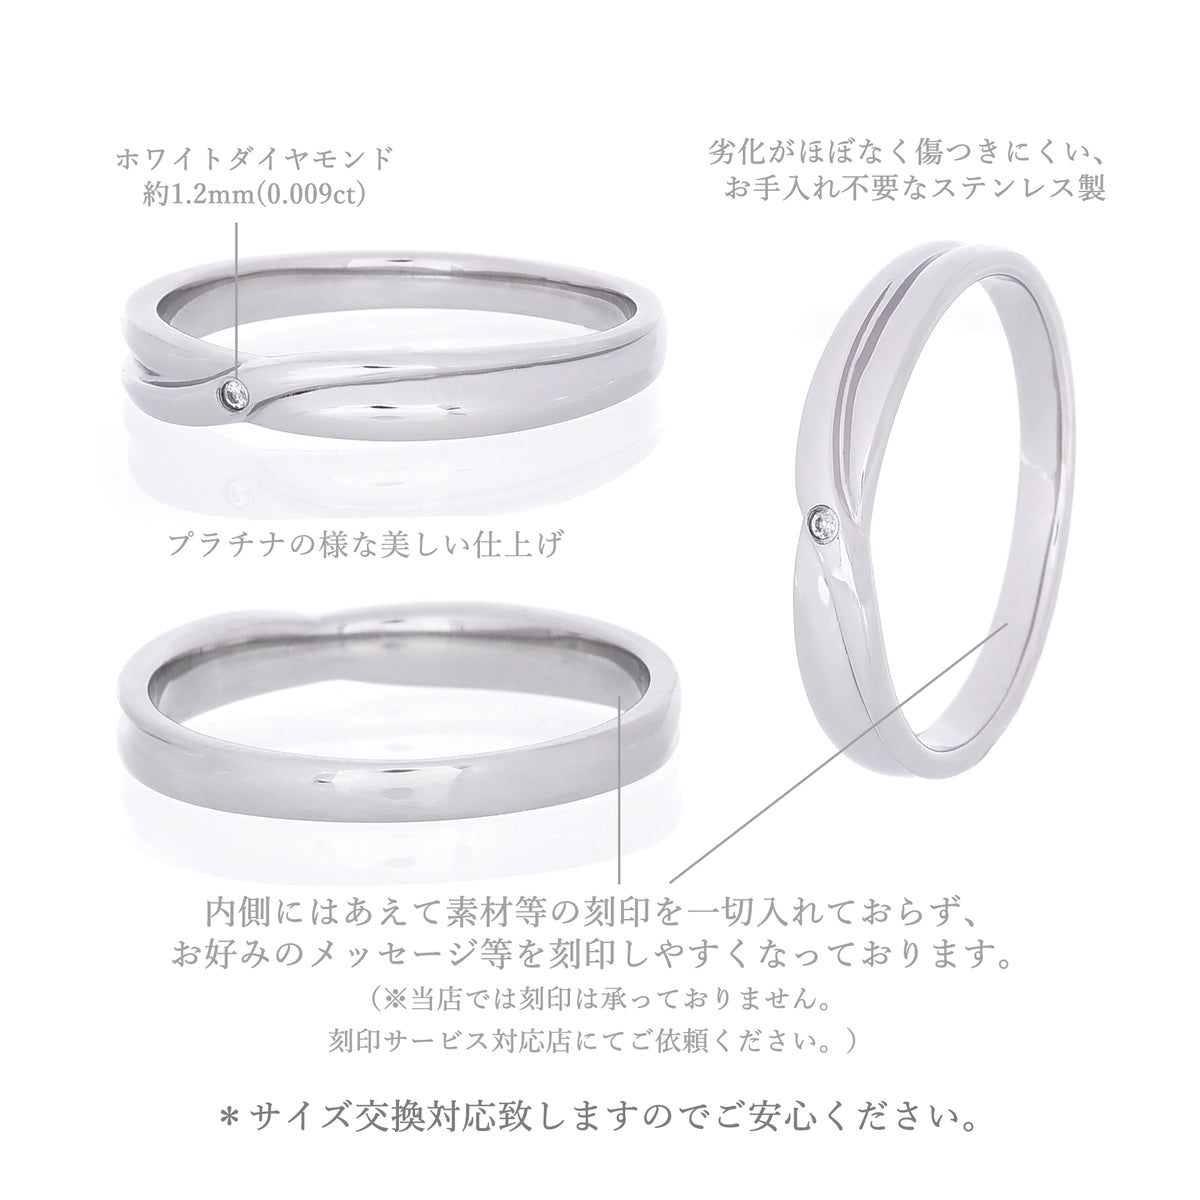 結婚指輪 メンズ レディース カップル お揃い 指輪 シンプル シルバー クロス リング ダイヤモンド ペアリング サージカル ステンレス 金属  アレルギー 316l (個別販売) – Truelements1